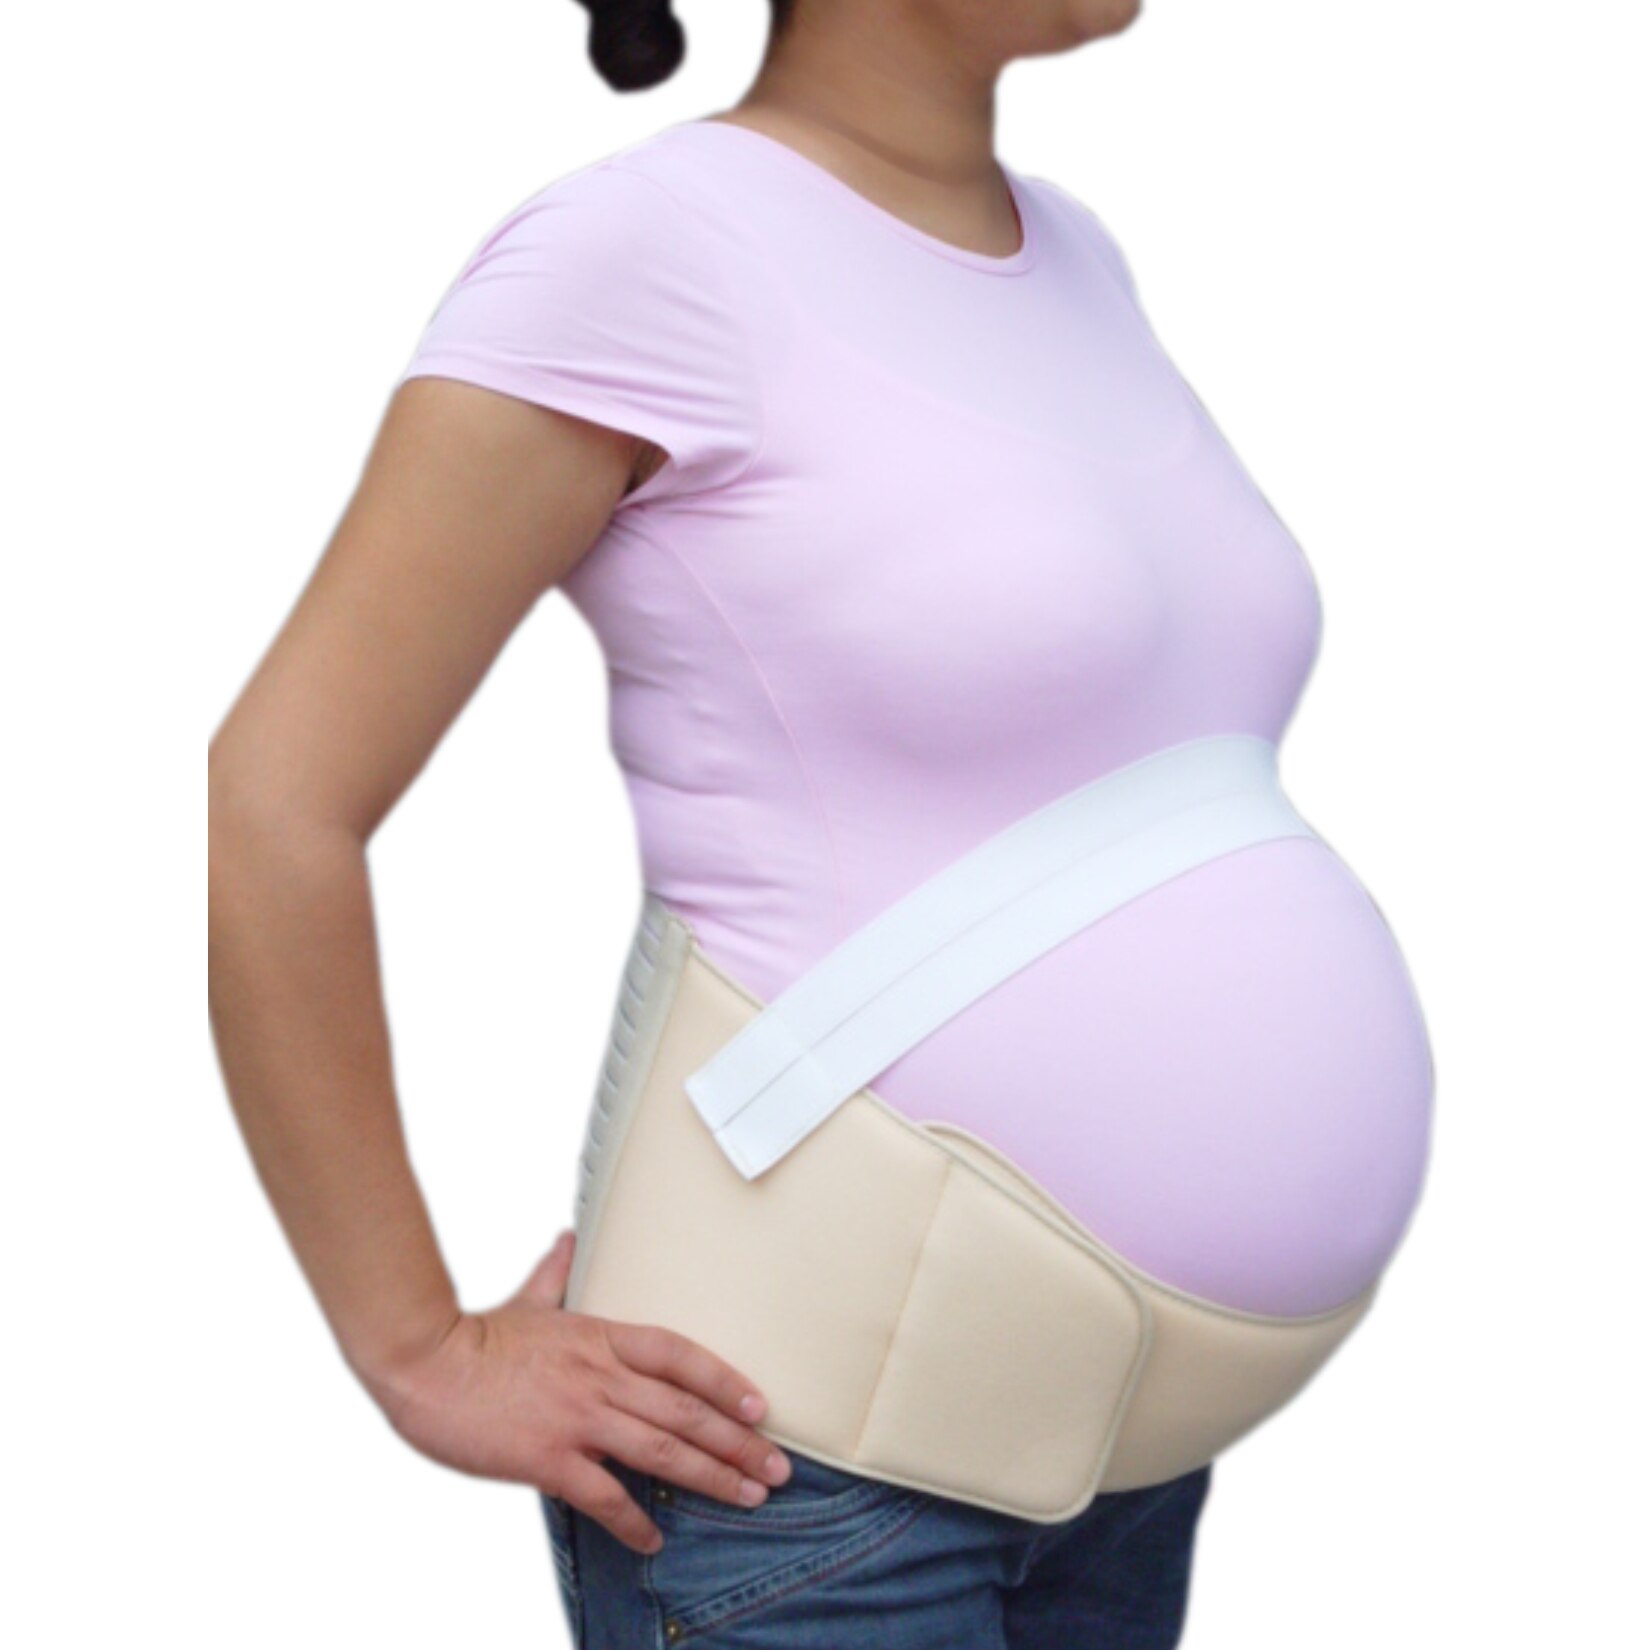 Lvbeis Cinturón de Maternidad Cintura y Abdomen Faja de premamá,Cinturón Pélvico Postparto Apoyo Durante el Embarazo Embarazo Cinturón con Correa de Hombro Ajustable 